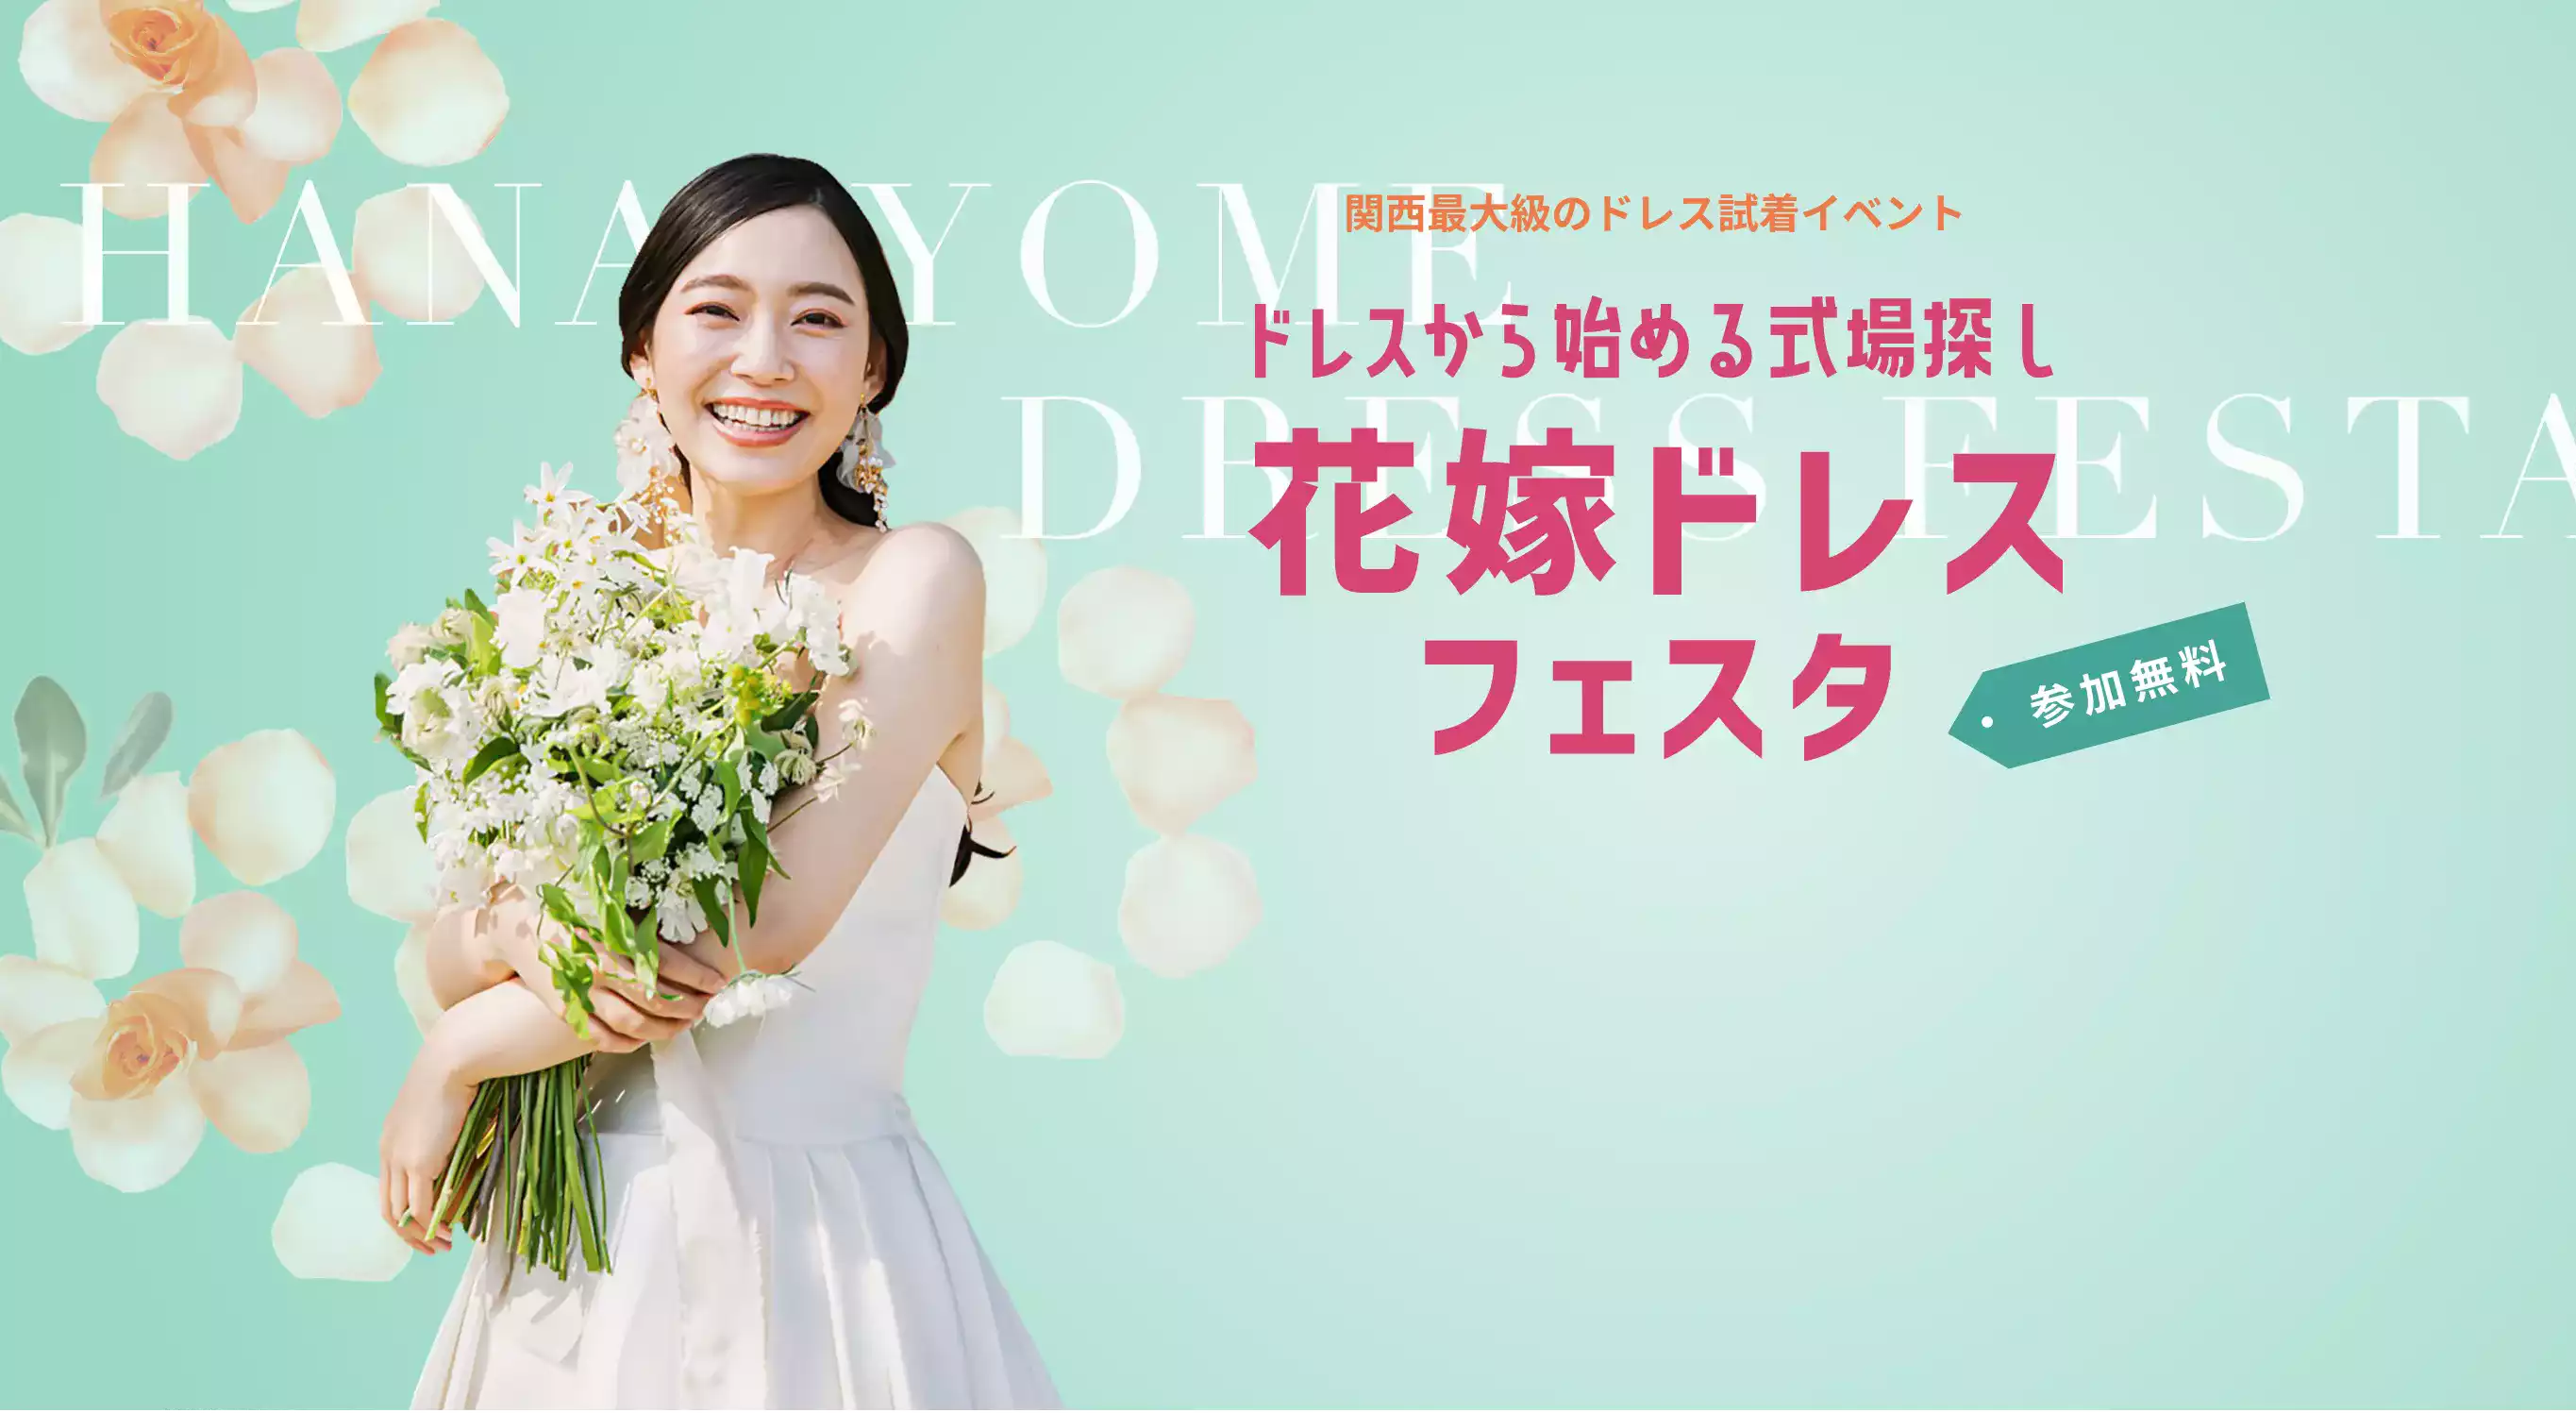 【公式】花嫁ドレスフェスタ｜関西最大級のウエディングイベント